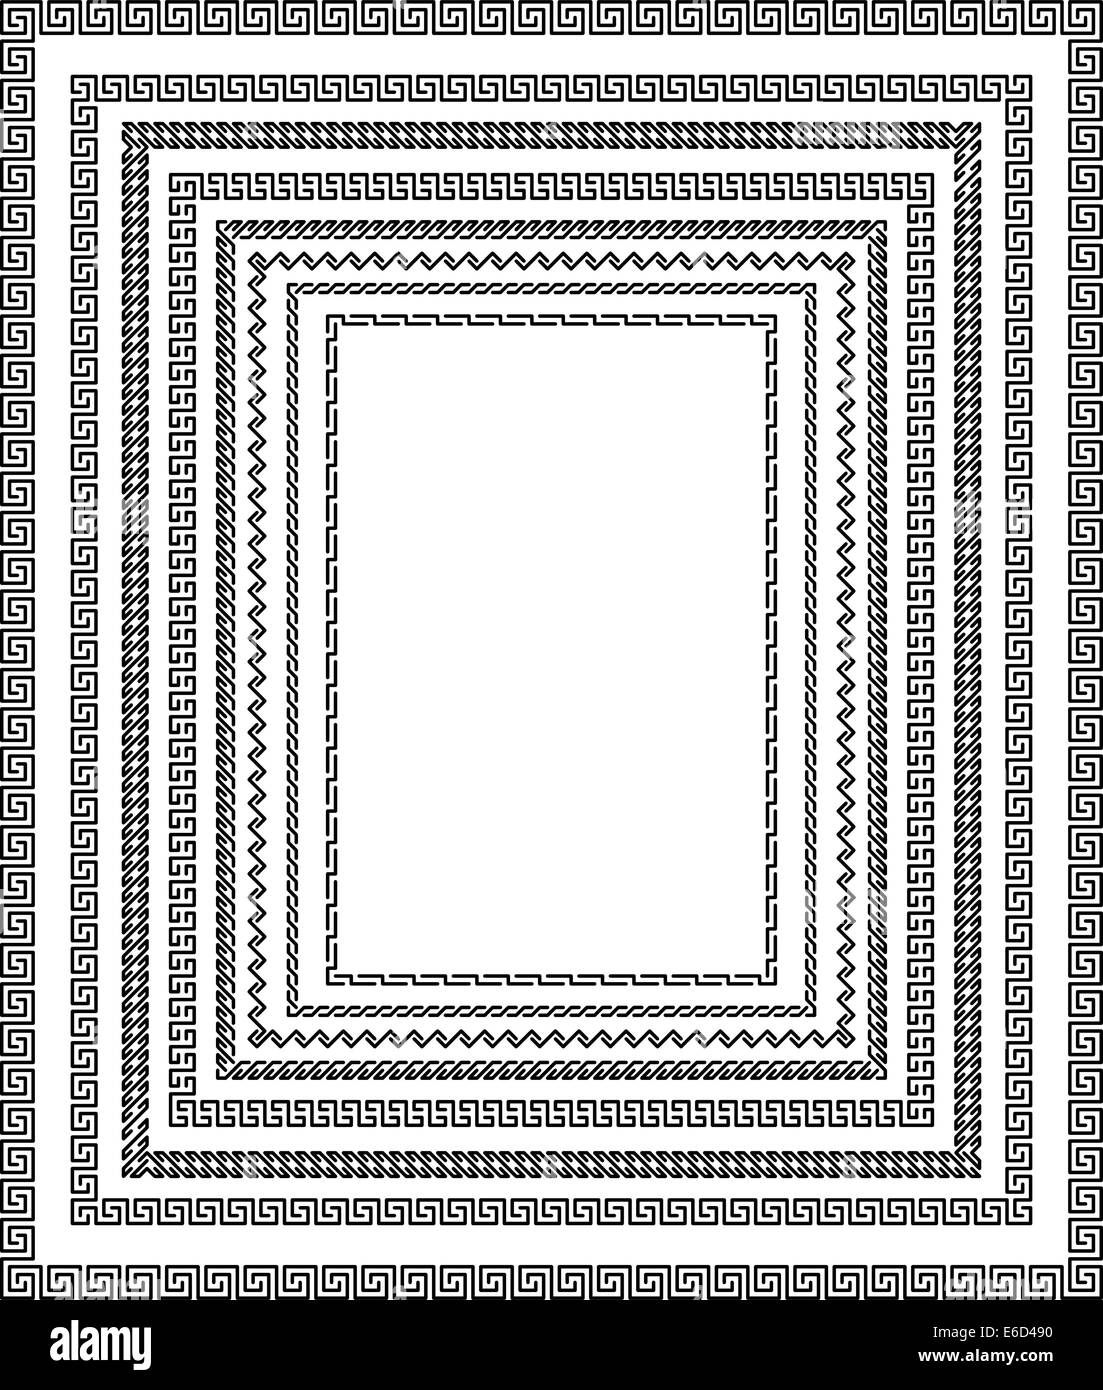 Ensemble de dessins vectoriels modifiables frame border faite avec des chemins non aplaties pour permettre aux modifications d'épaisseur de ligne Illustration de Vecteur